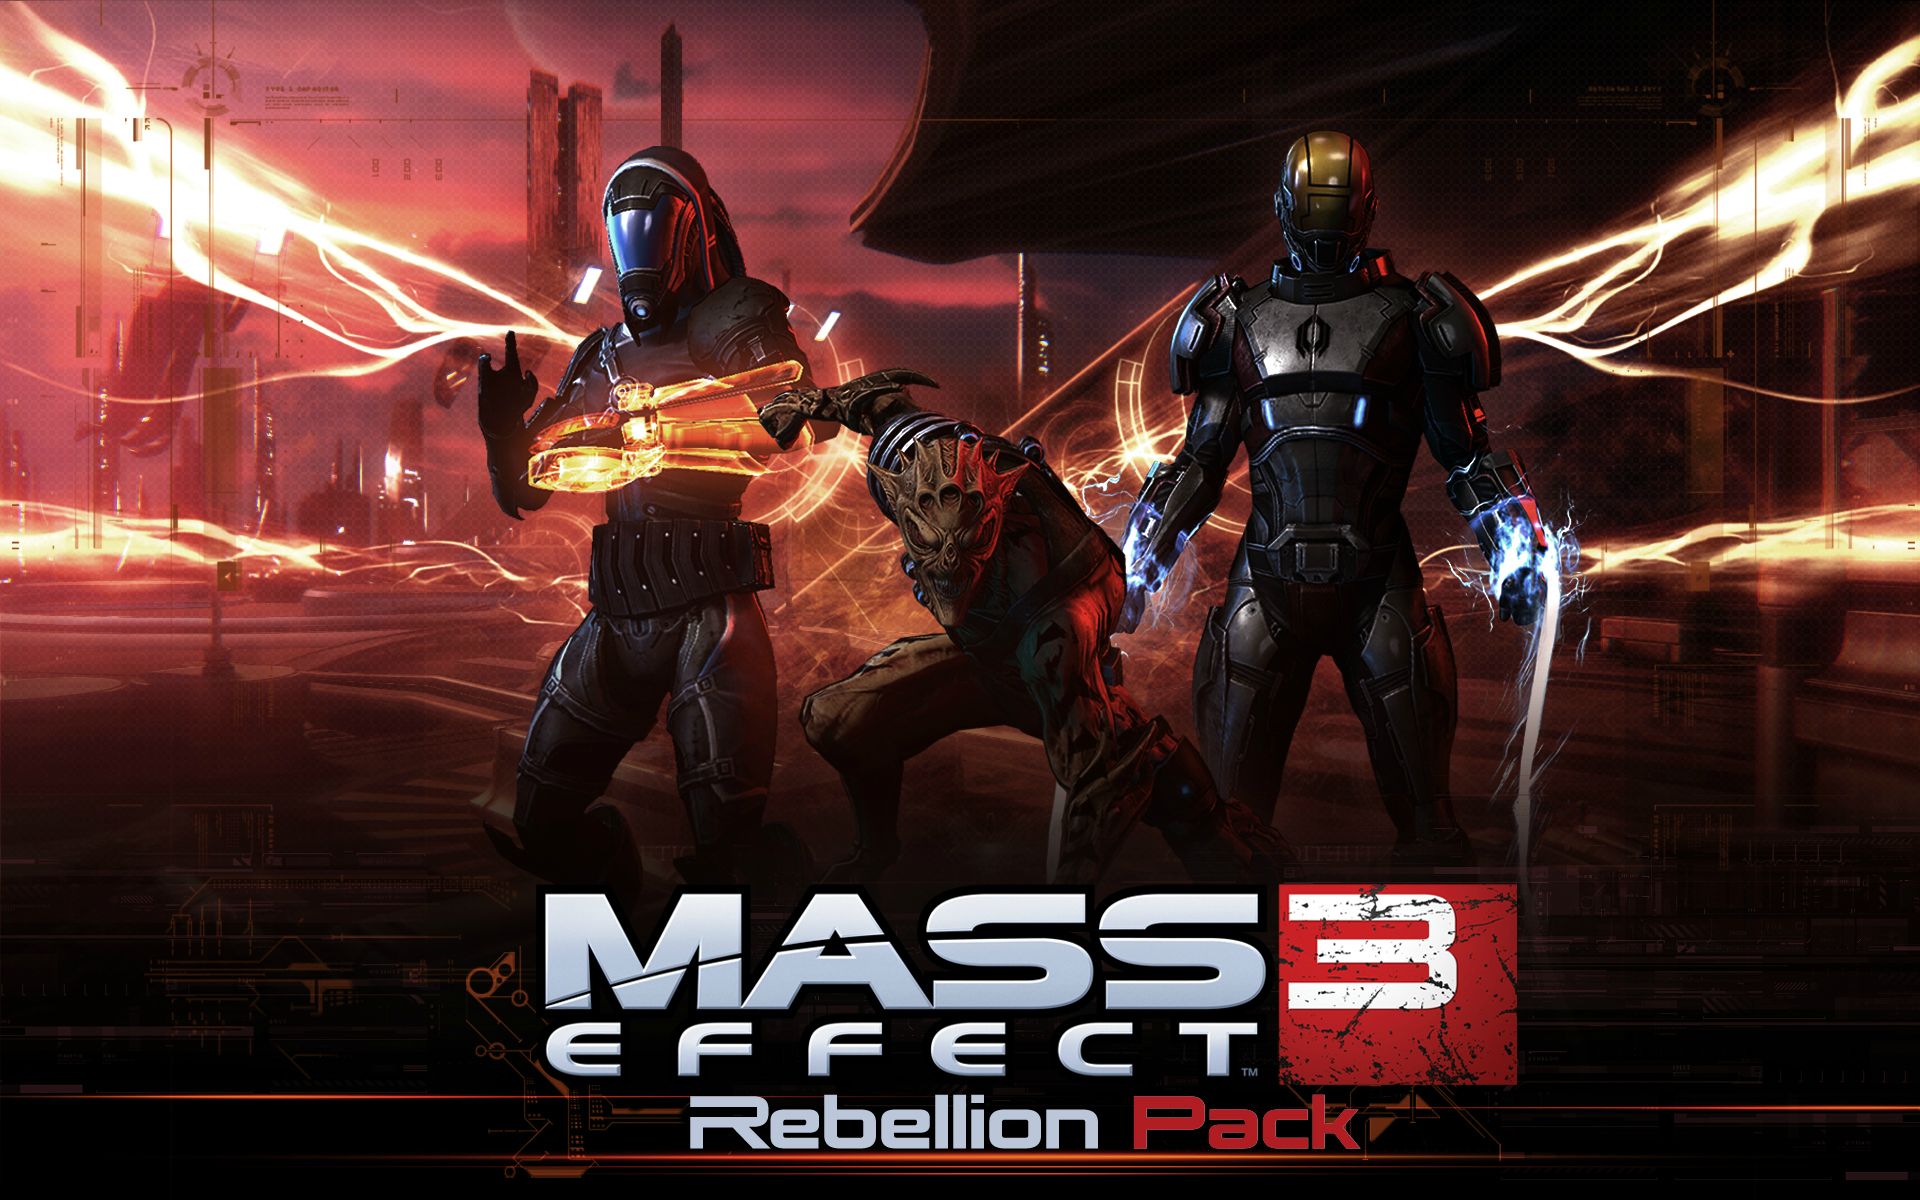 Mass Effect 3 'Rebellion' DLC announced